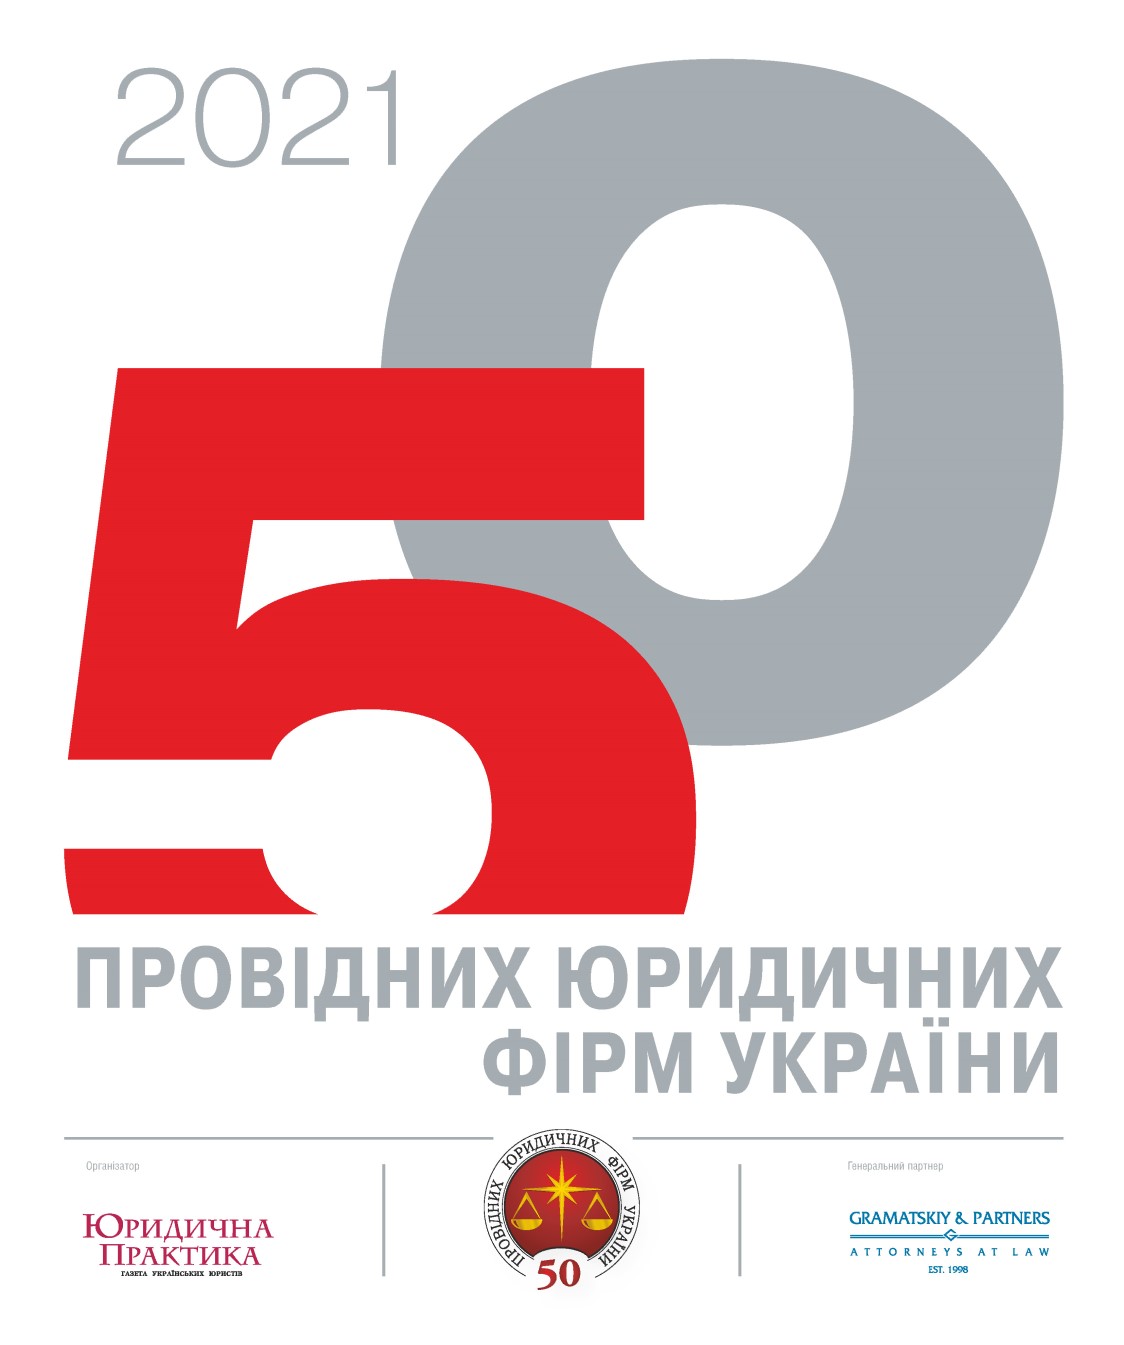 ТОП-50 провідних юридичних фірм України